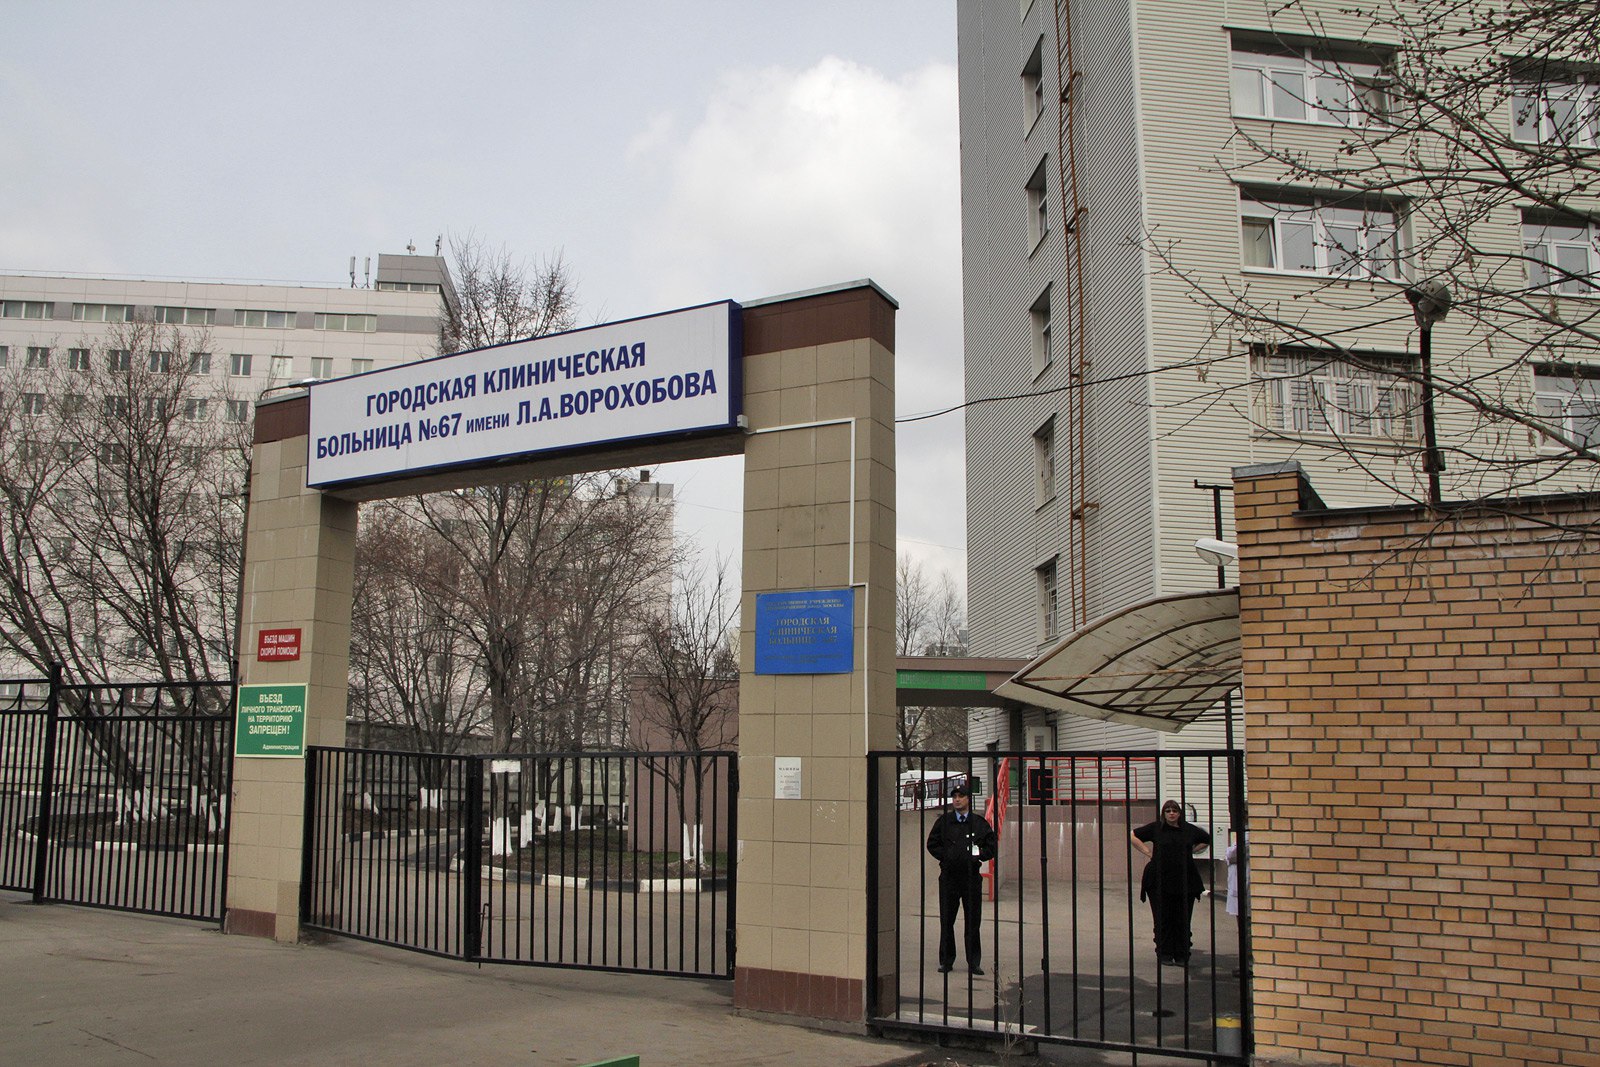 67 Городская клиническая больница Москва